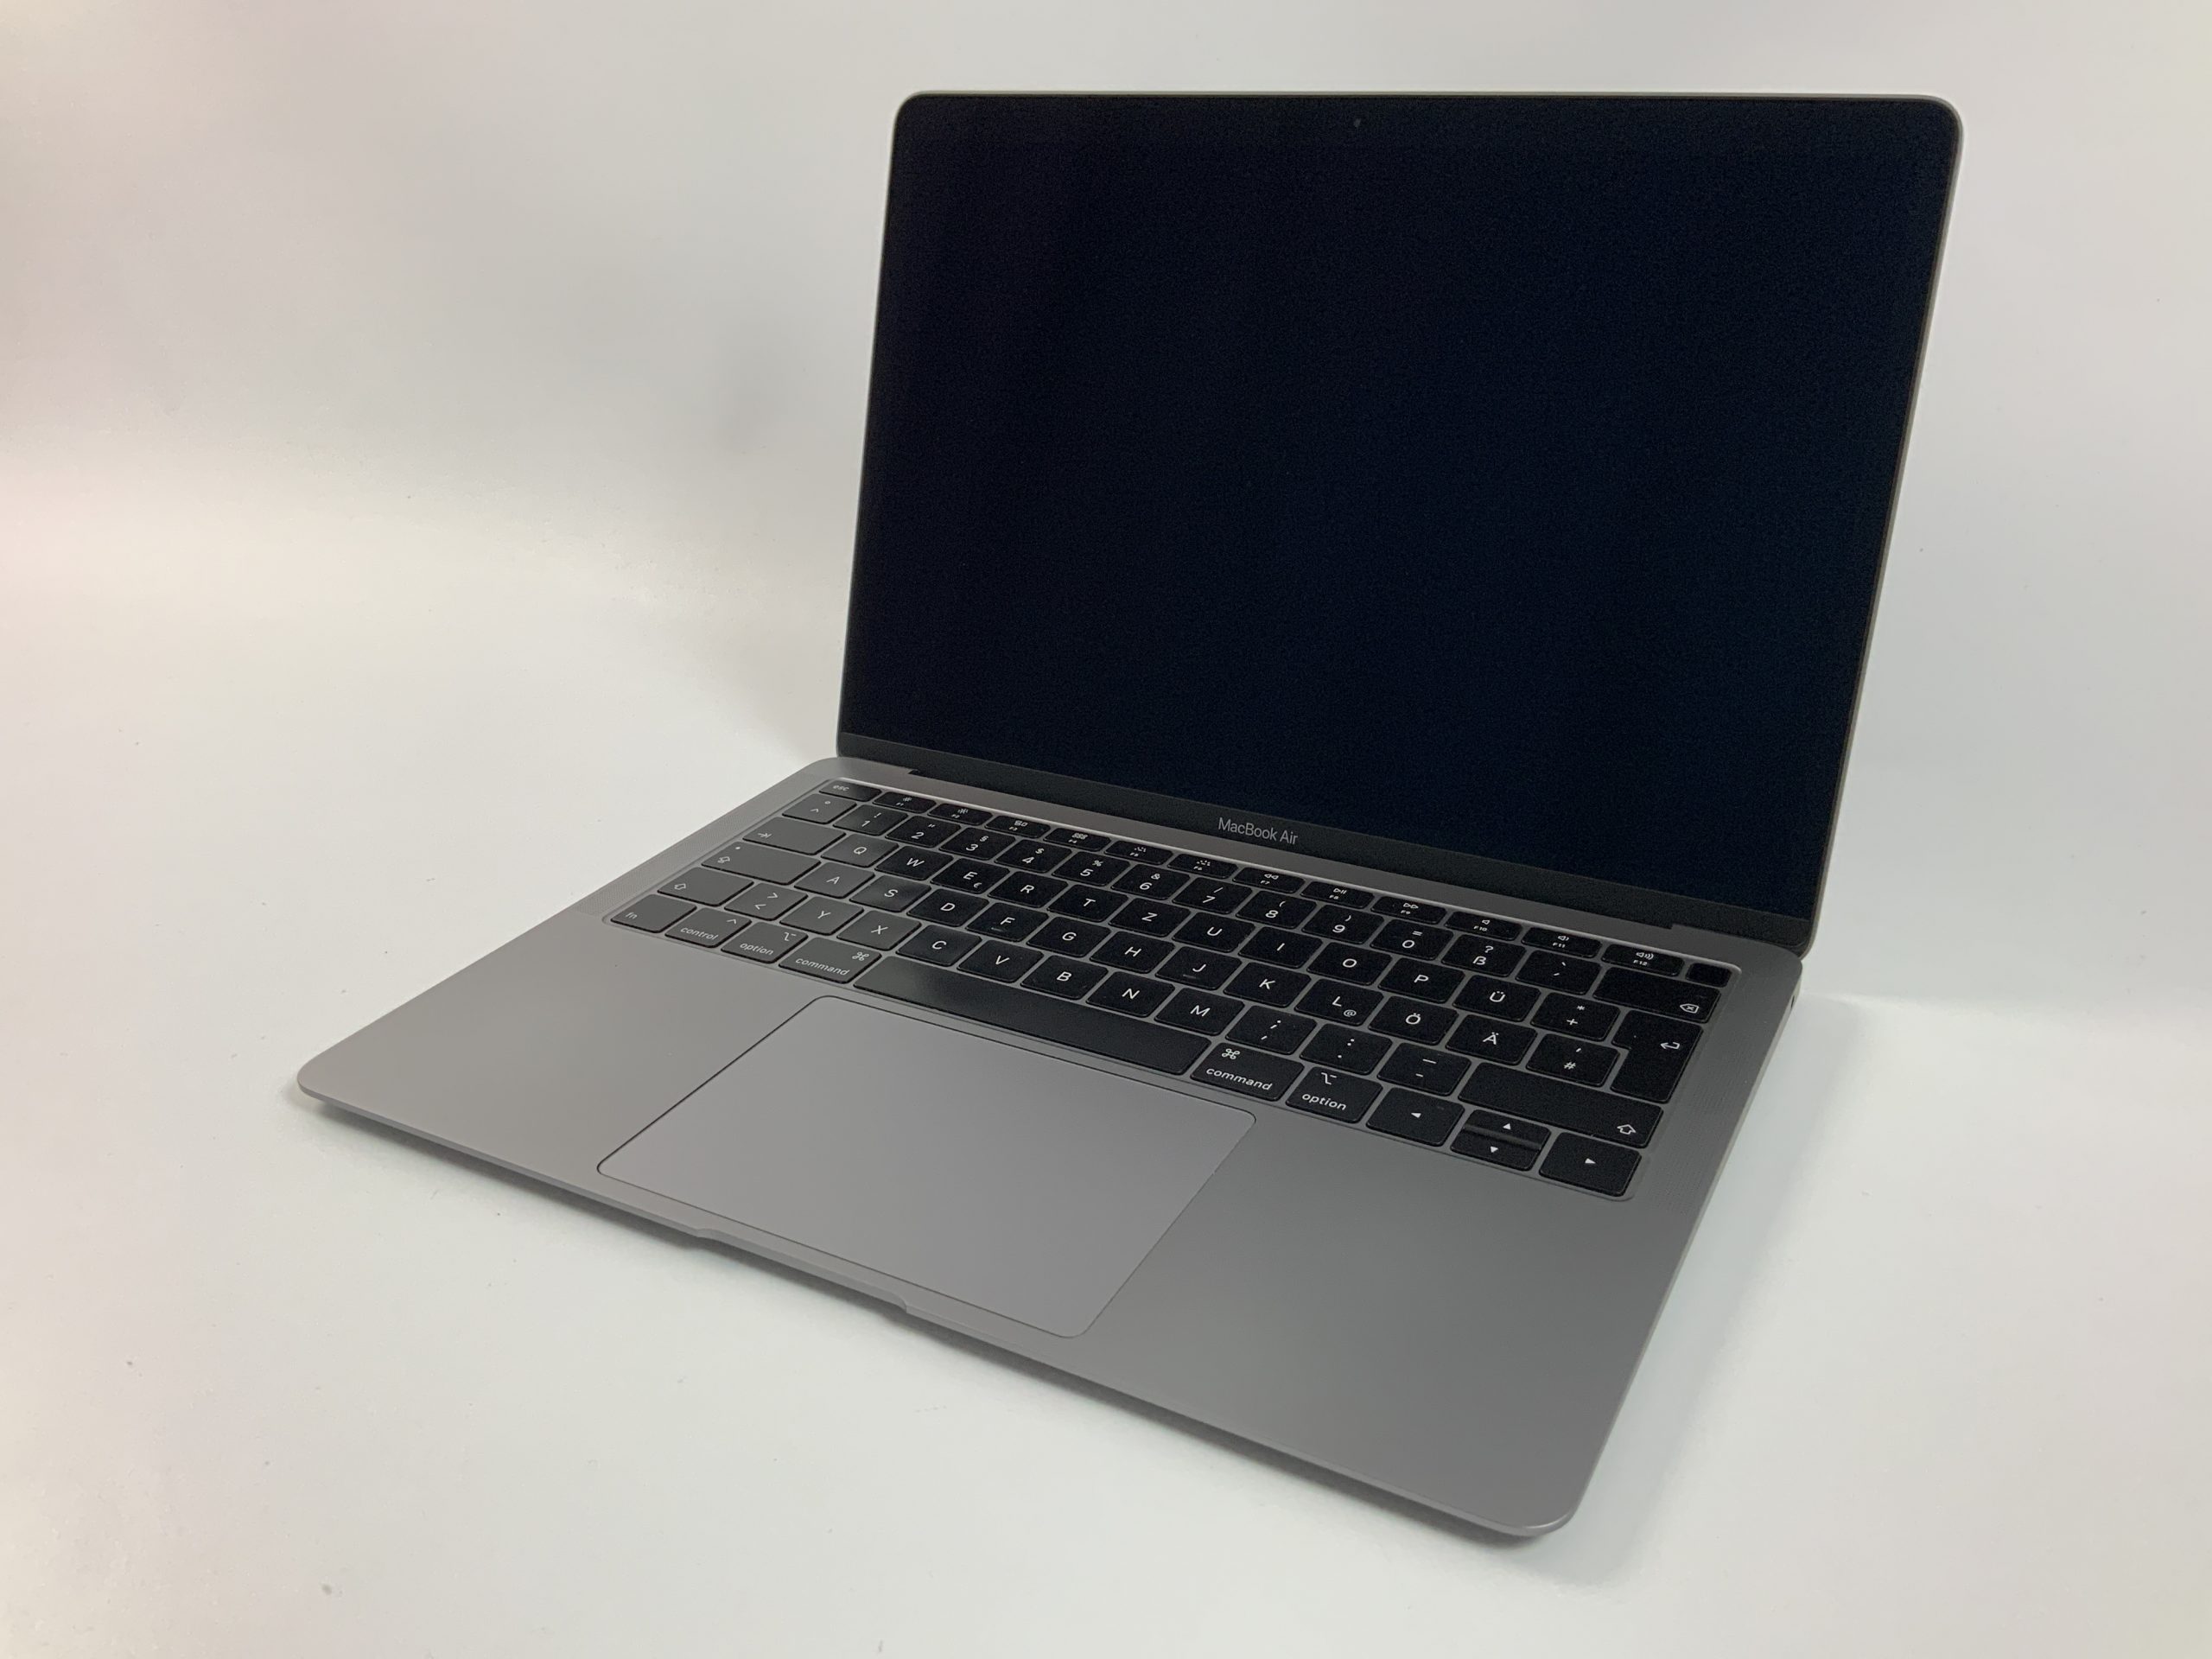 MacBook Air 13" Mid 2019 (Intel Core i5 1.6 GHz 8 GB RAM 512 GB SSD), Space Gray, Intel Core i5 1.6 GHz, 8 GB RAM, 512 GB SSD, immagine 1